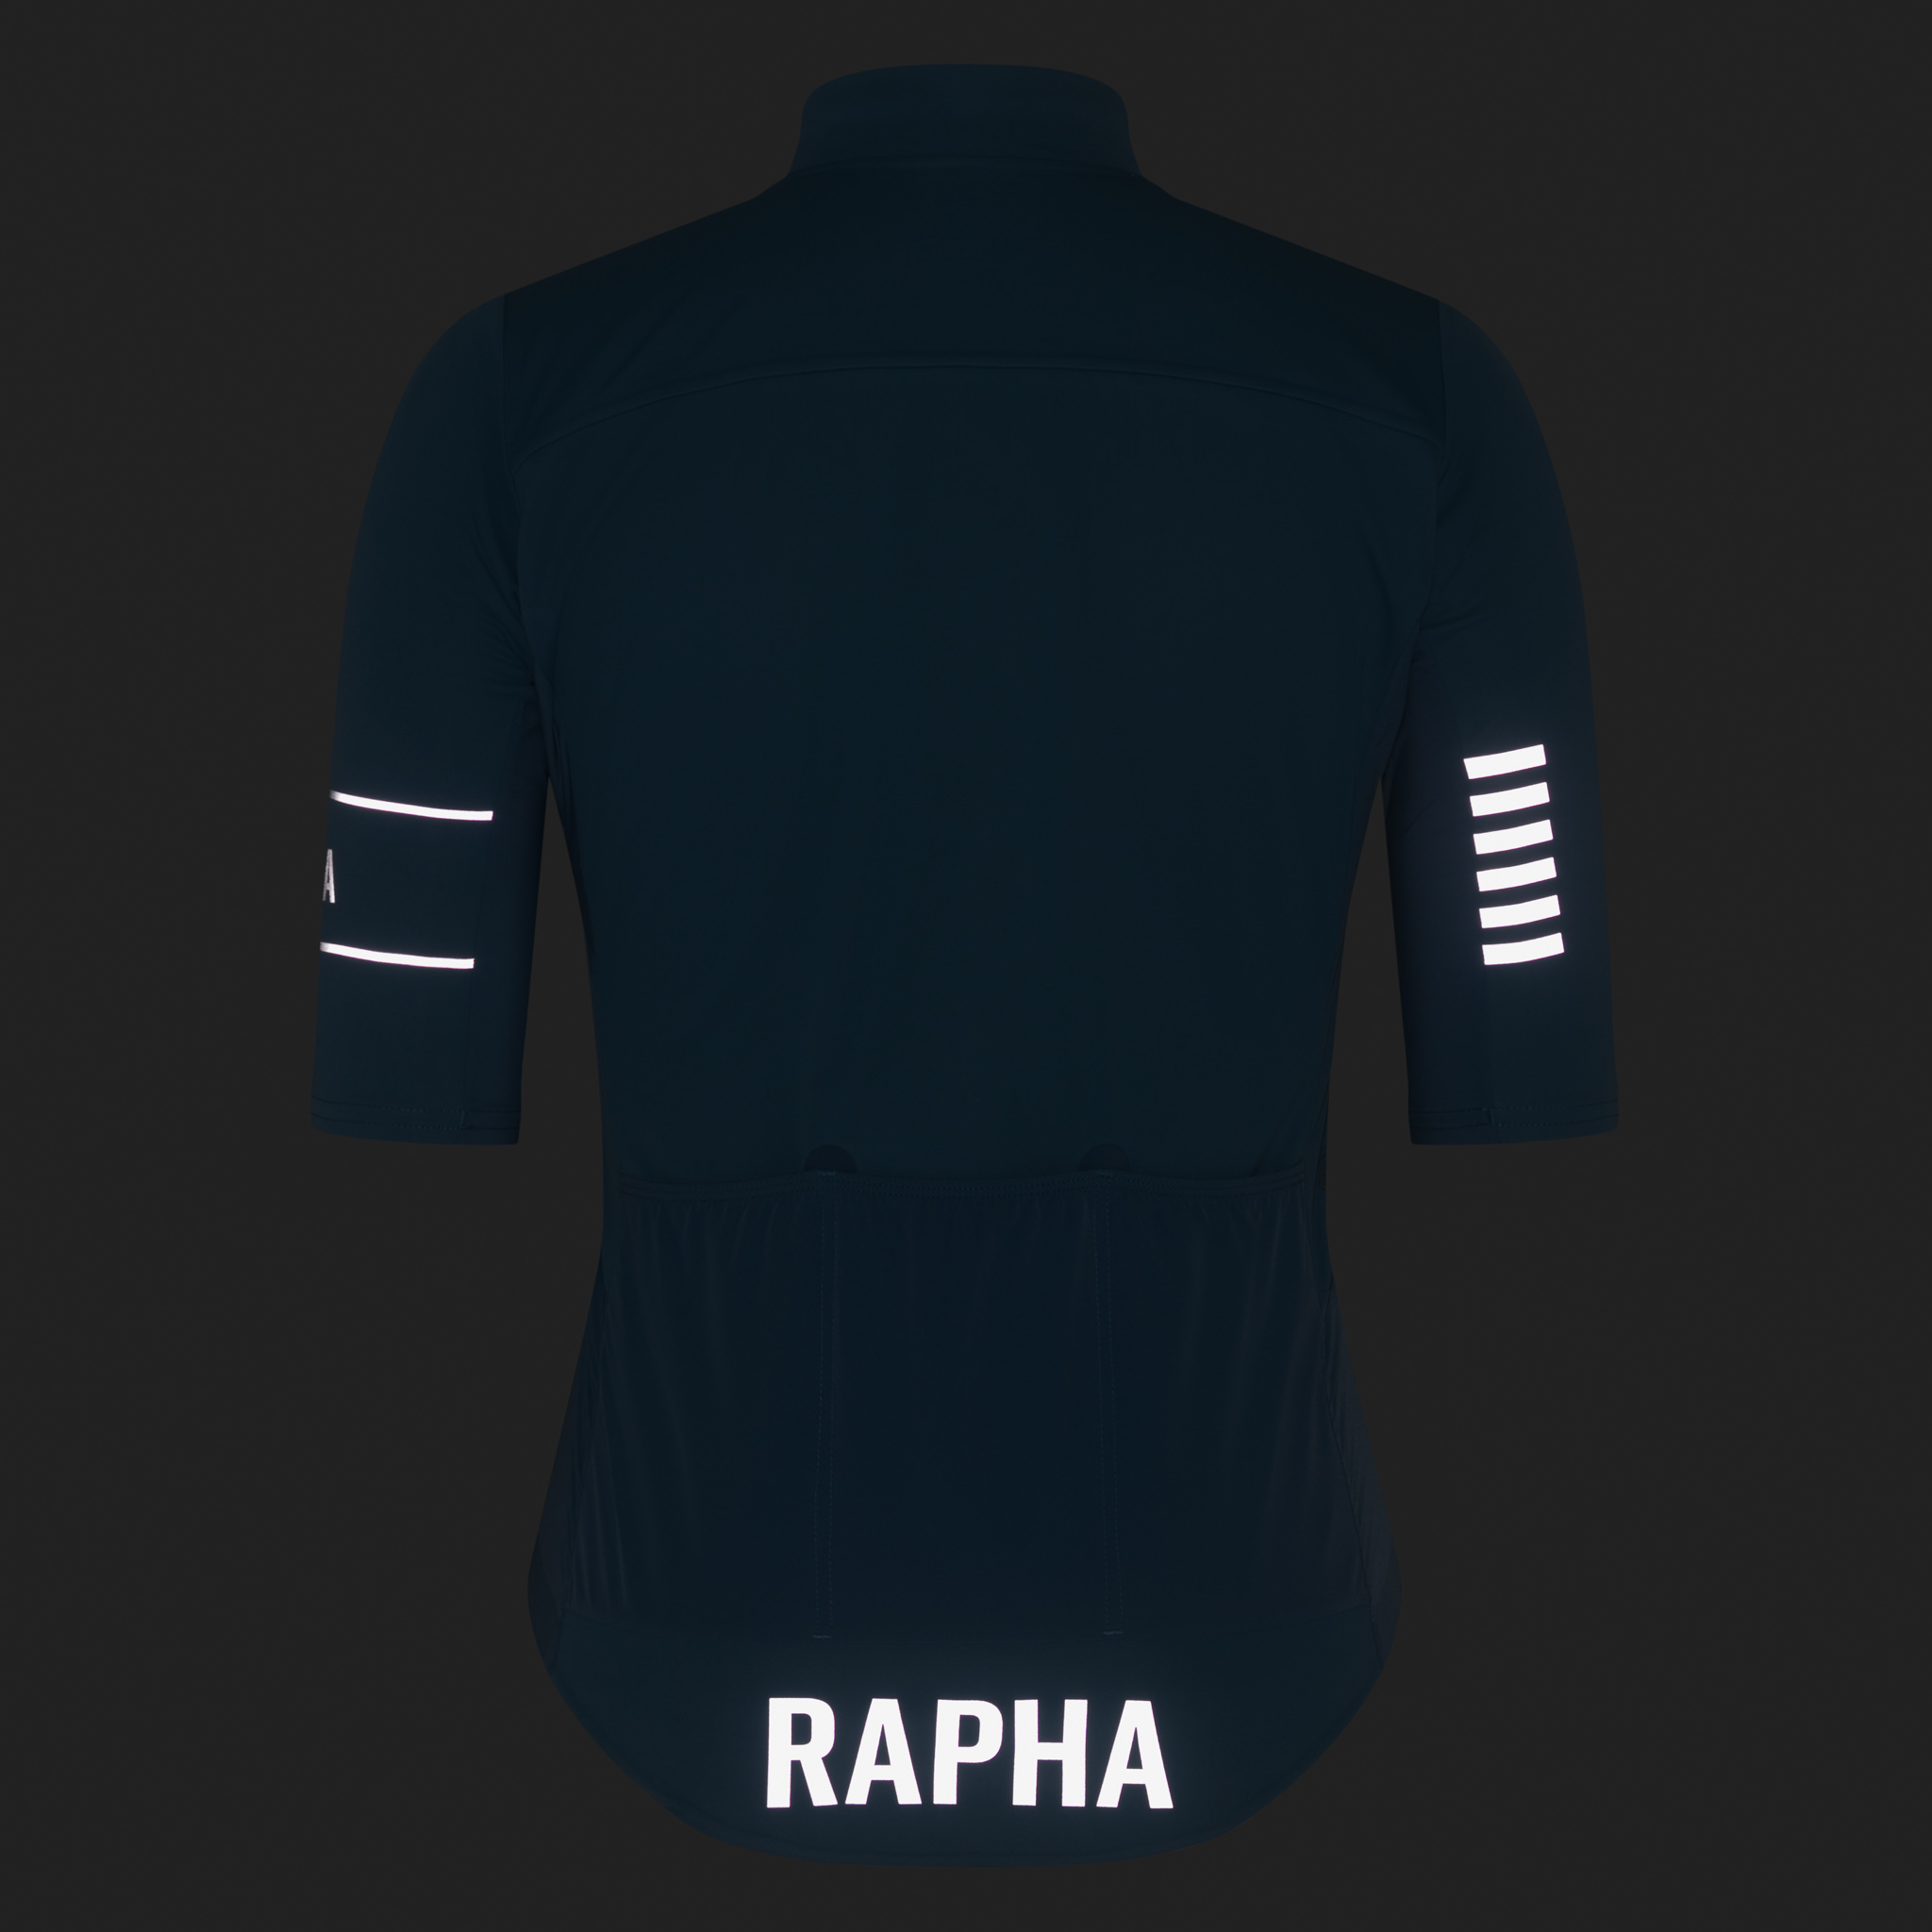 Women's Pro Team Windstopper Jersey | Rapha